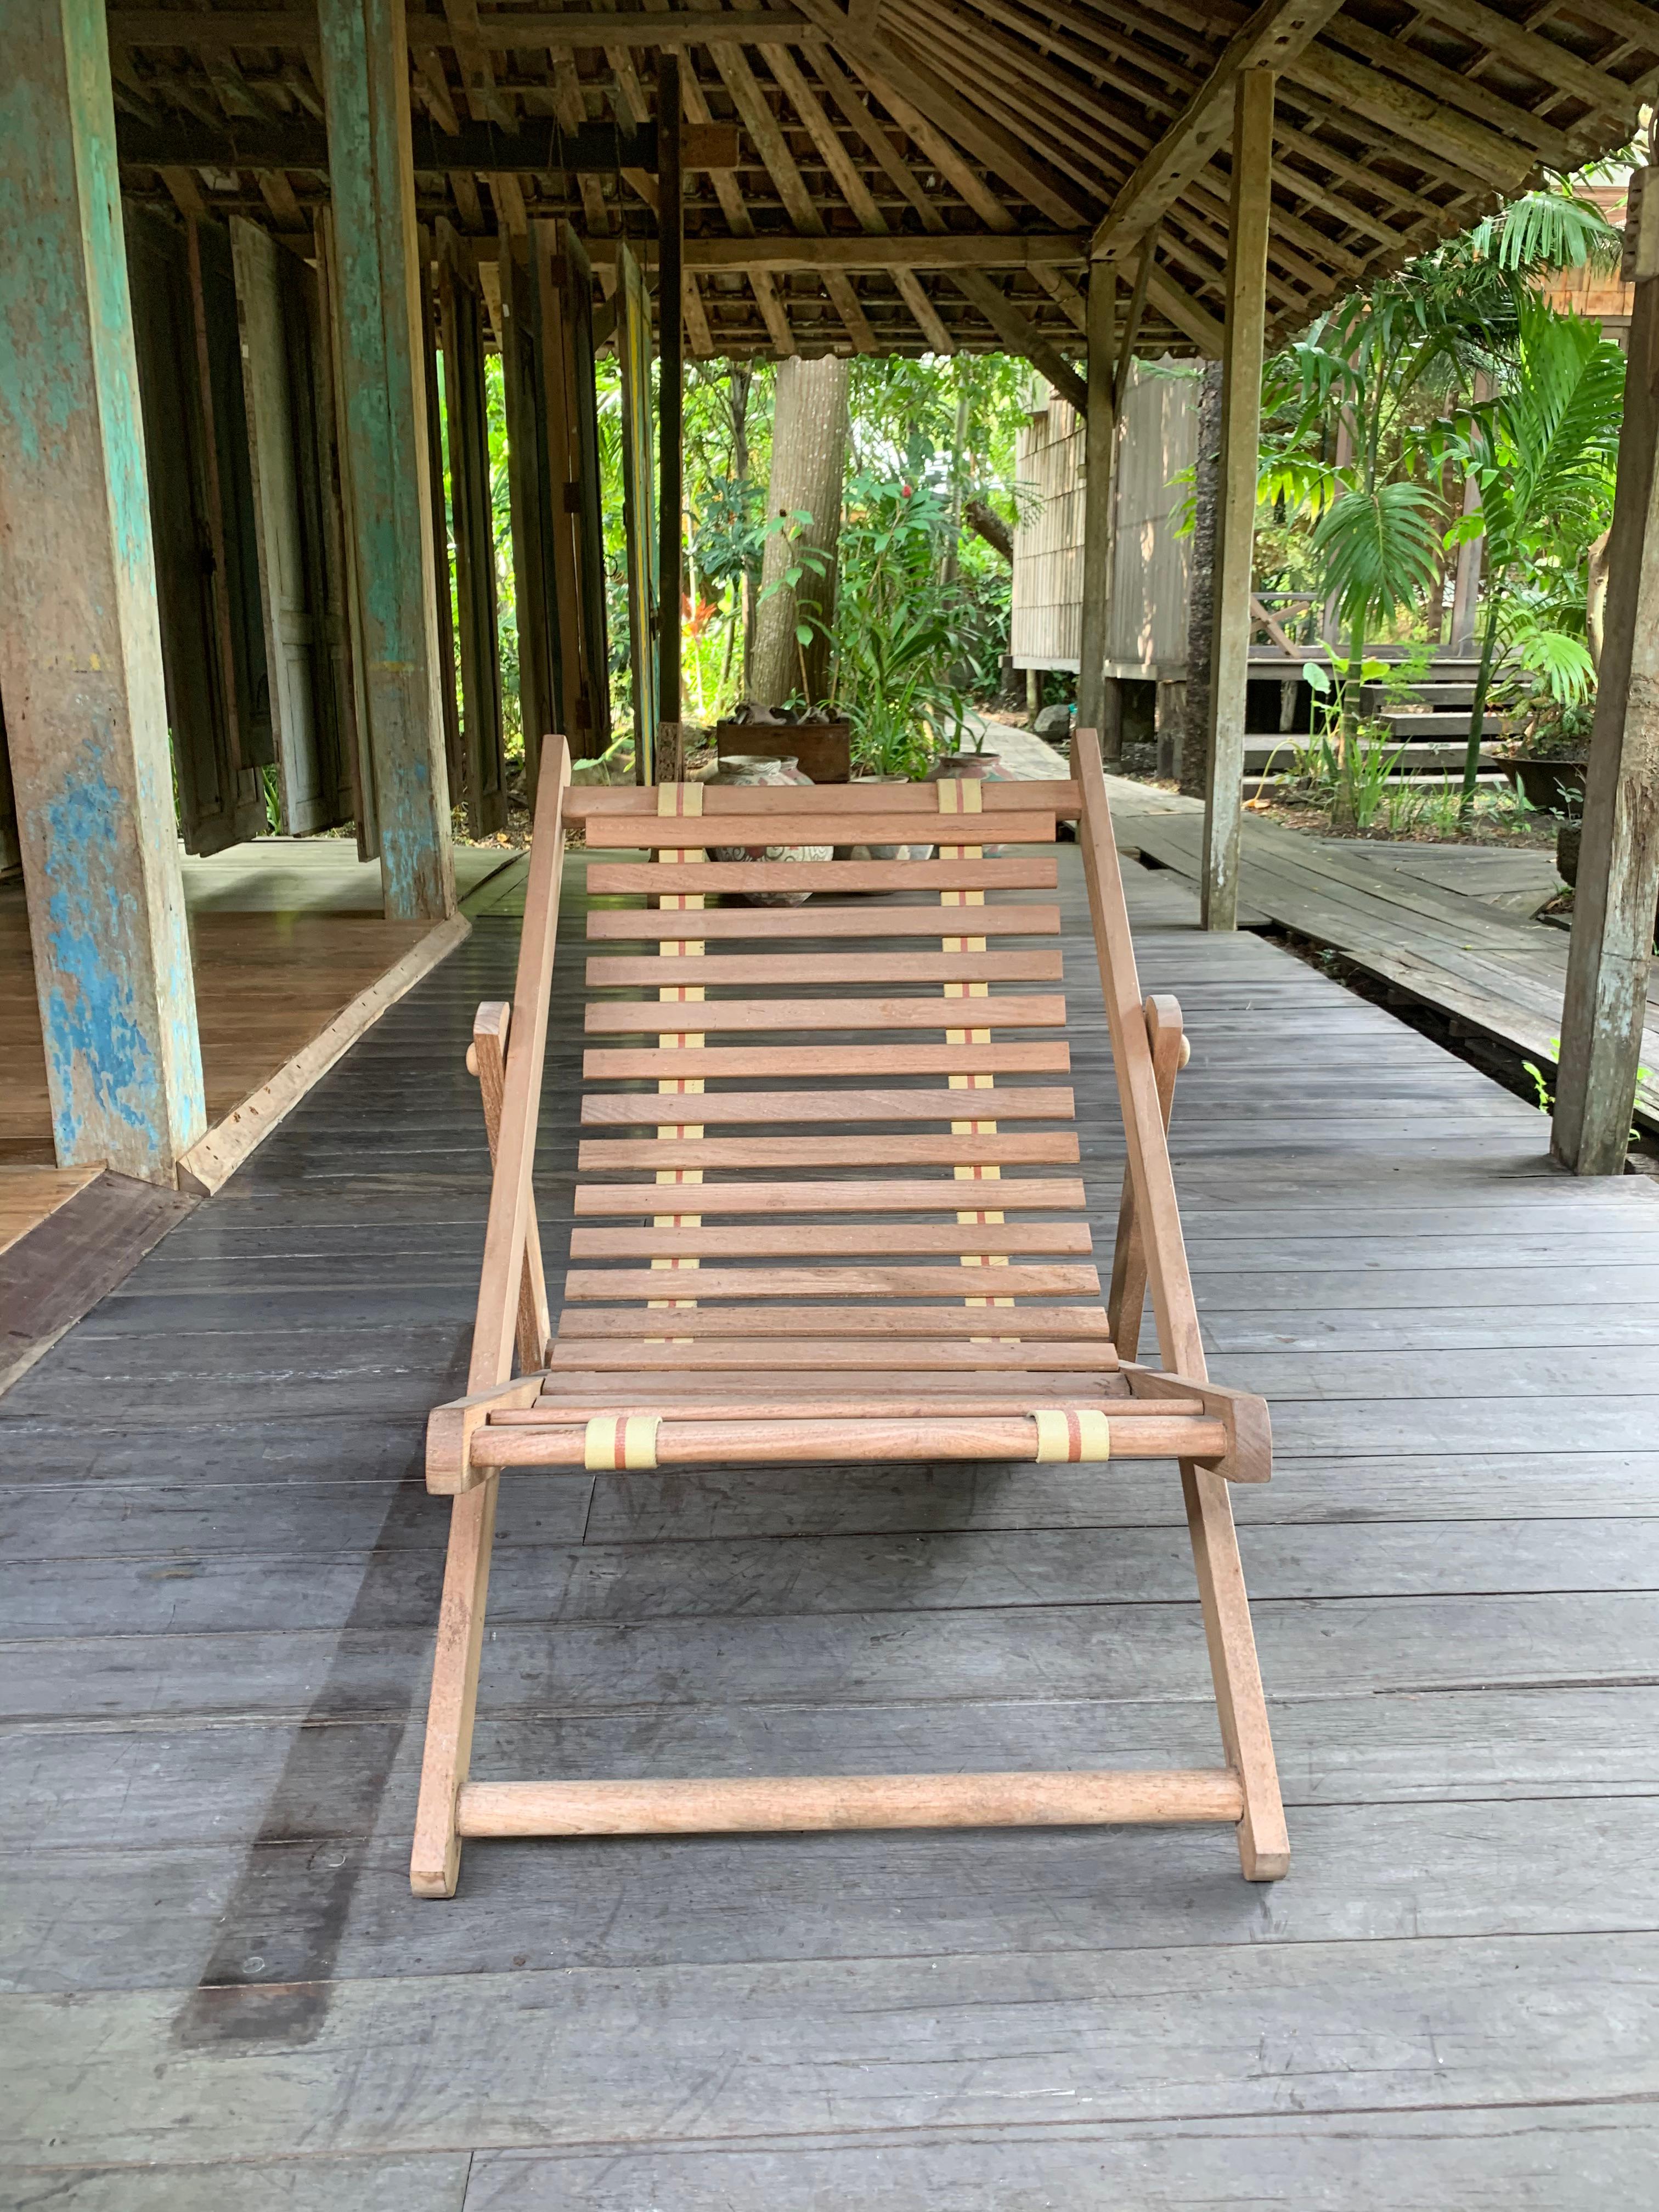 Ein handgefertigter, faltbarer Teakholz-Liegestuhl. Diese Stühle werden von einheimischen Handwerkern gefertigt und zeichnen sich durch eine subtile, glatte Holzstruktur aus. Die Gurte, die die waagerechten Holzleisten des Sitzes halten, werden